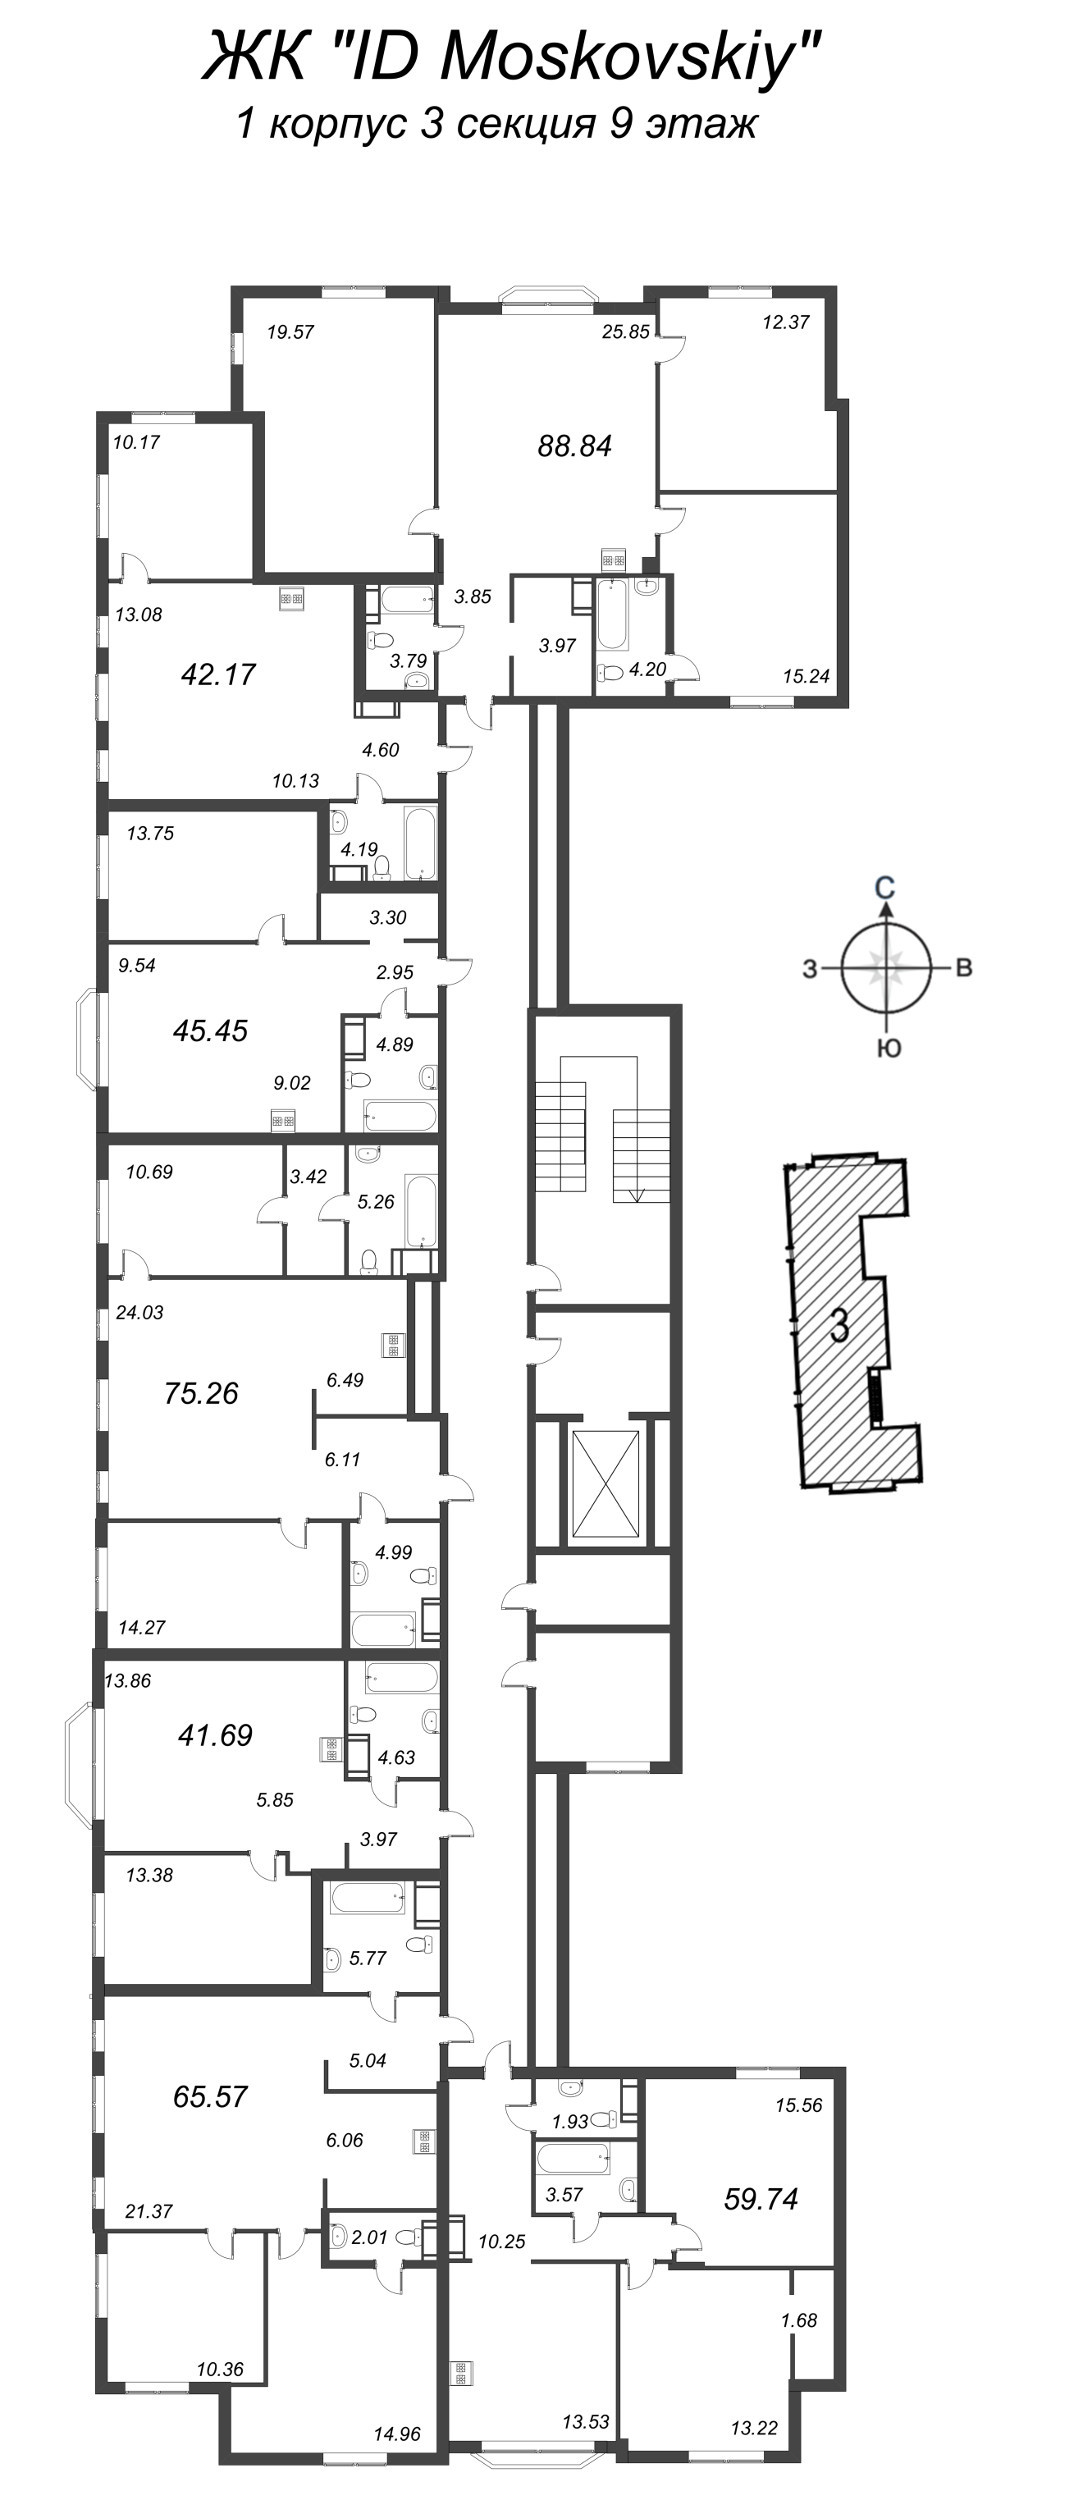 4-комнатная (Евро) квартира, 88.84 м² в ЖК "ID Moskovskiy" - планировка этажа